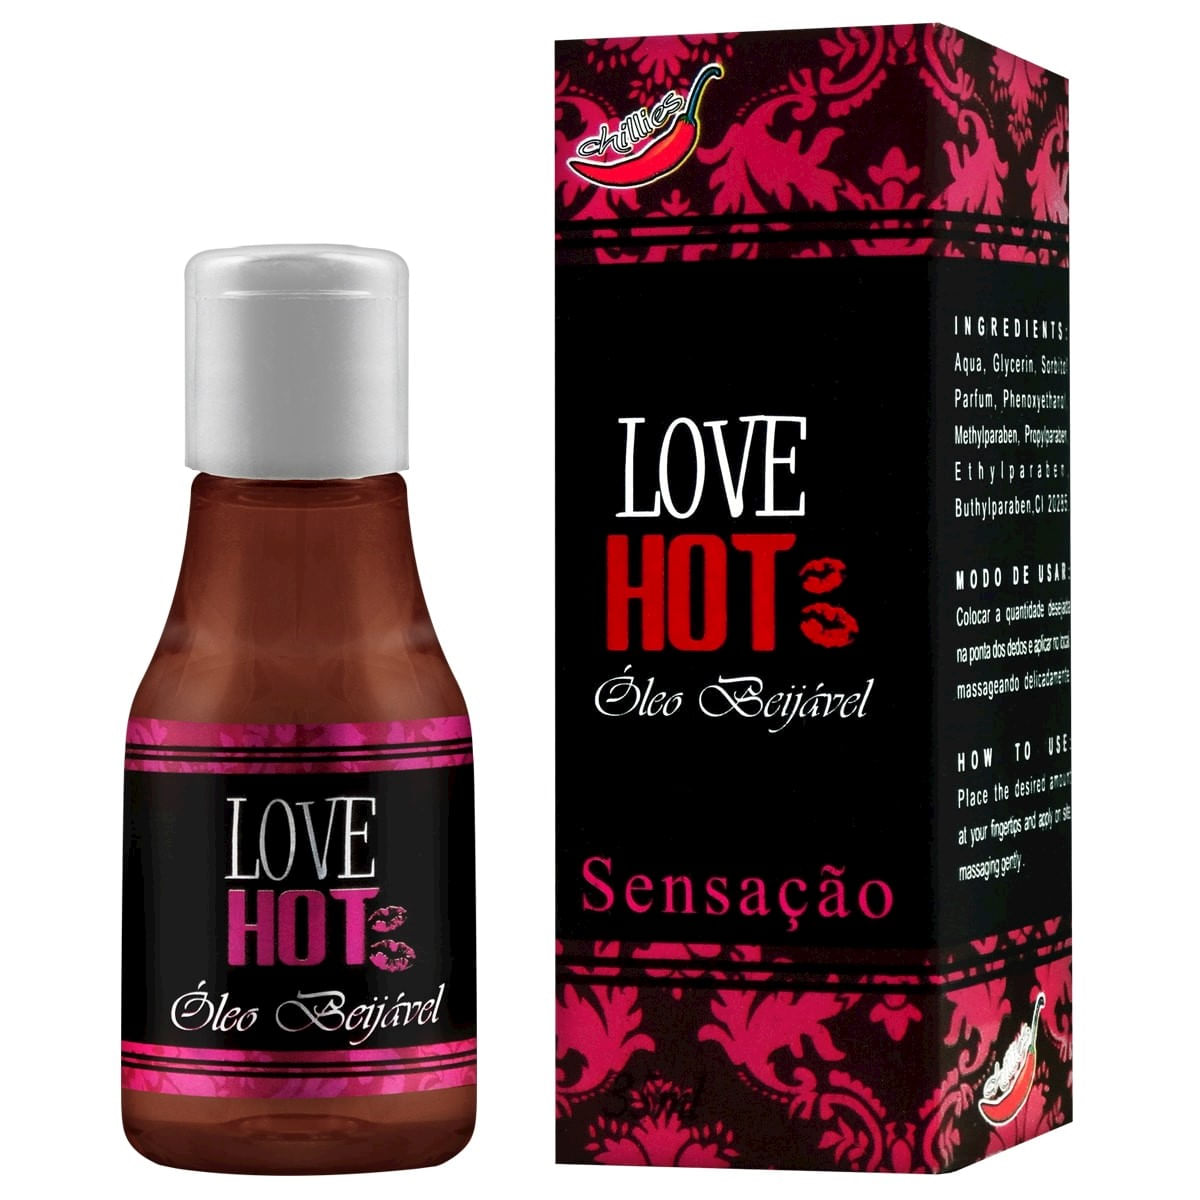 Love Hot Óleo Beijável de Sensação 35ml Chillies